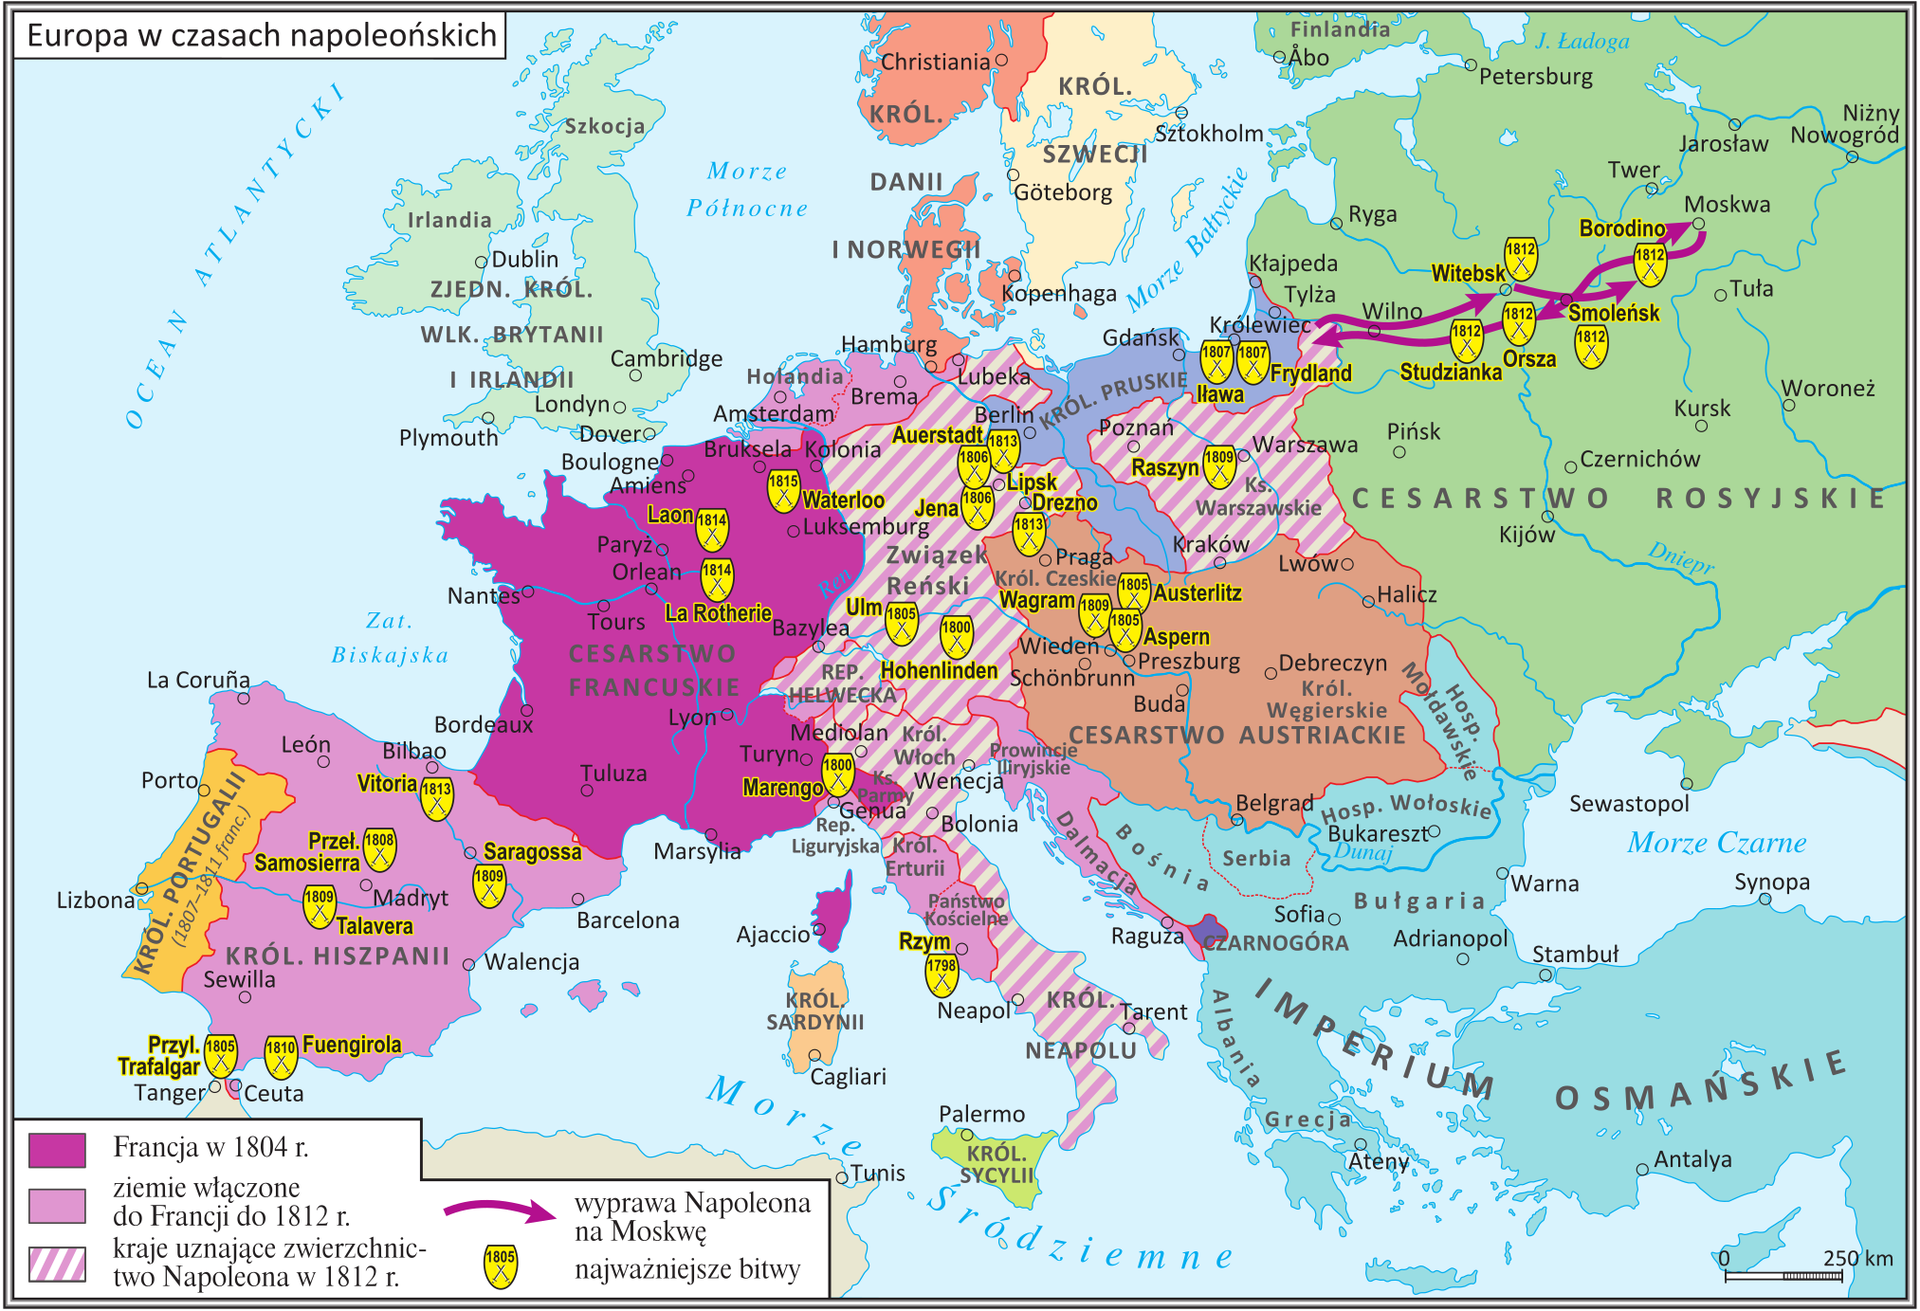 Mapa prezentuje Europę w czasach napoleońskich. Zaznaczony jest na niej obszar Cesarstwa Francuskiego w 1804 roku, a także ziemie włączone do Francji do 1812 roku (czyli Królestwo Hiszpanii, Królestwo Etrurii, Państwo Kościelne, Dalmacja, Holandia i północna część Niemiec z Hamburgiem i Bremą. Ukazane są także kraje uznające zwierzchnictwo Napoleona w 1812 roku: Królestwo Neapolu, Królestwo Włoch, Republika Helwecka, Związek Reński, Księstwo Warszawskie. Ukazana jest także droga wojsk napoleońskich w Rosji, w wyprawie na Moskwę: z Królewca, przez Witebsk, Smoleńsk, Borodino do Moskwy i odwrót przez Orszę, Studziankę, Wilno do Księstwa Warszawskiego. Na mapie zaznaczone są także bitwy stoczone przez wojska napoleońskie, między innymi: 1805 bitwa pod Austerlitz, 1805 bitwa morska pod Trafalgarem, 1806 bitwa pod Jeną i Auerstadt, 1807 bitwa pod Iławą Pruską, 1812 bitwa pod Borodino, 1813 bitwa pod Lipskiem, 1815 bitwa pod Waterloo. 